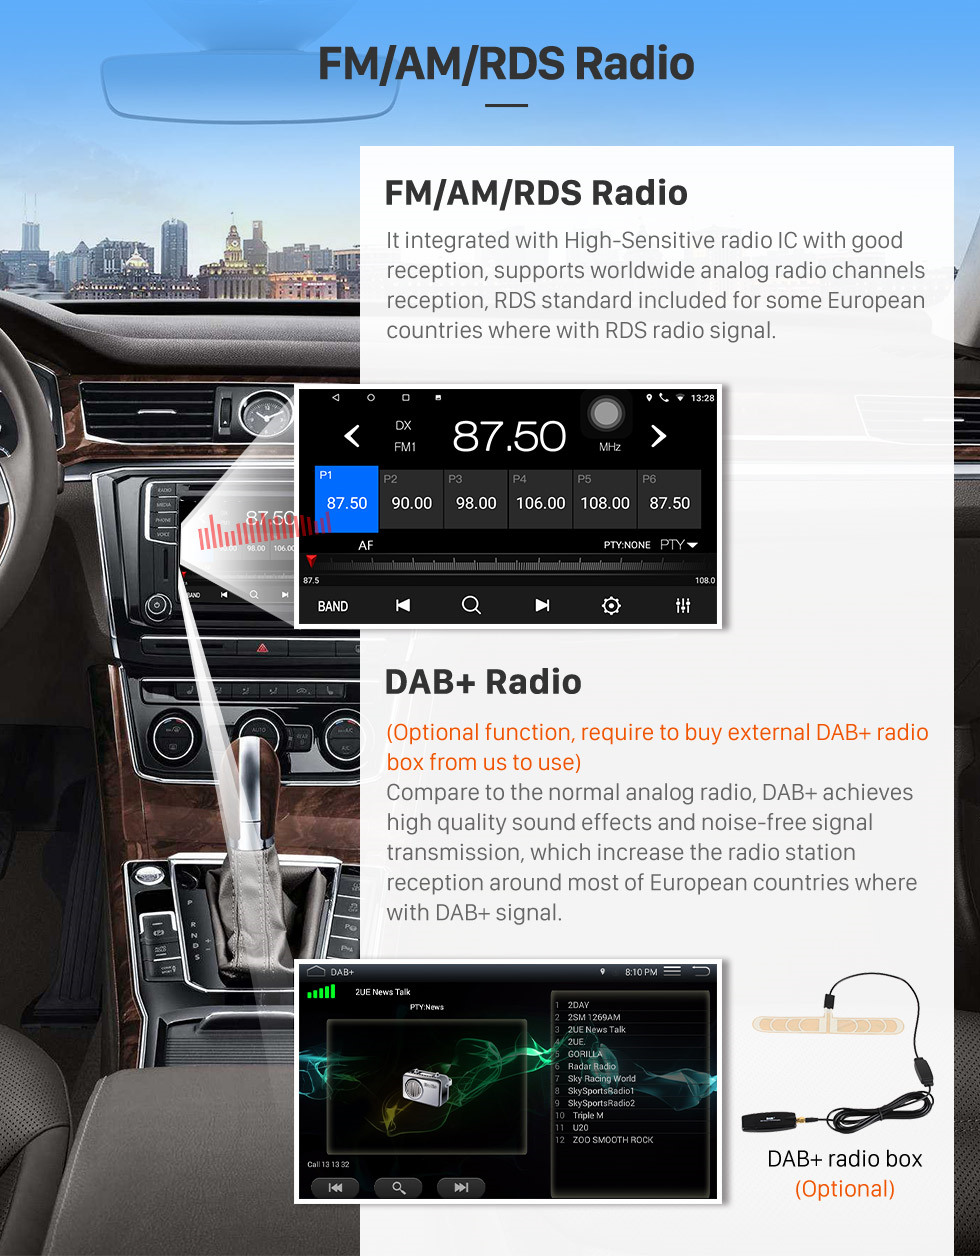 Seicane 8 pulgadas 2009-2014 Toyota ALPHARD / Vellfire ANH20 Android 10.0 Radio Sistema de navegación GPS con 3G WiFi Pantalla táctil capacitiva TPMS DVR OBD II Cámara trasera Control de volante AUX USB Bluetooth HD 1080P Video